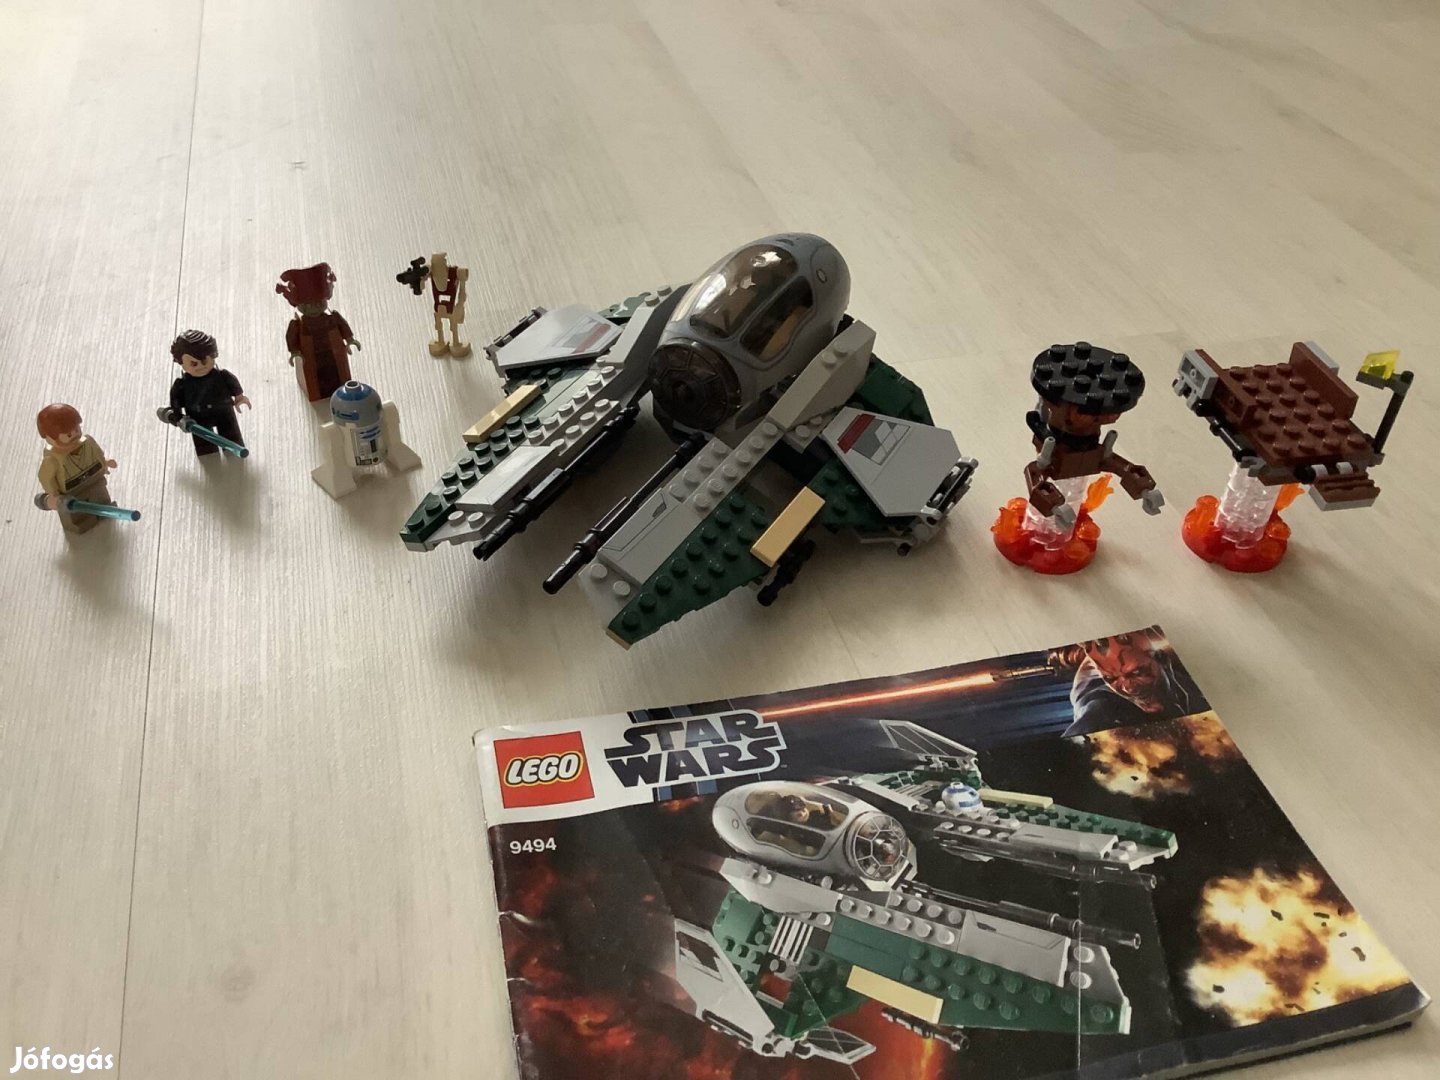 Lego Star Wars - 9494